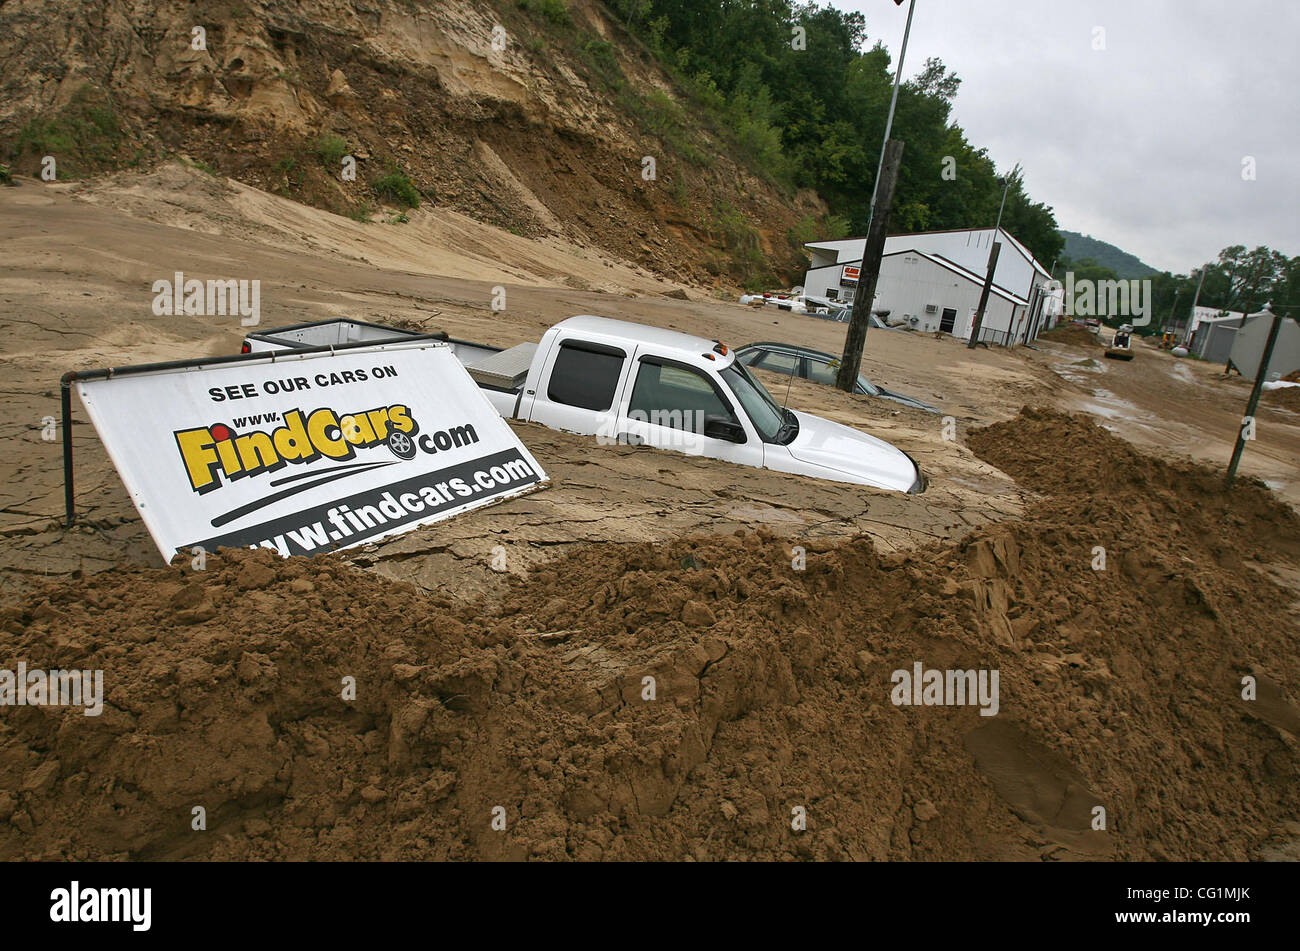 21 août 2007 - Hokah, MN, USA - un camion et voiture sont à moitié enterré par une coulée de boue le long de l'autoroute 7 dans Hokah après plusieurs jours de fortes pluies. Selon certaines estimations, 15 pouces ou plus de pluie est tombée sur la région entre samedi et dimanche, provoquant des inondations massives, des glissements et six morts. ( Banque D'Images